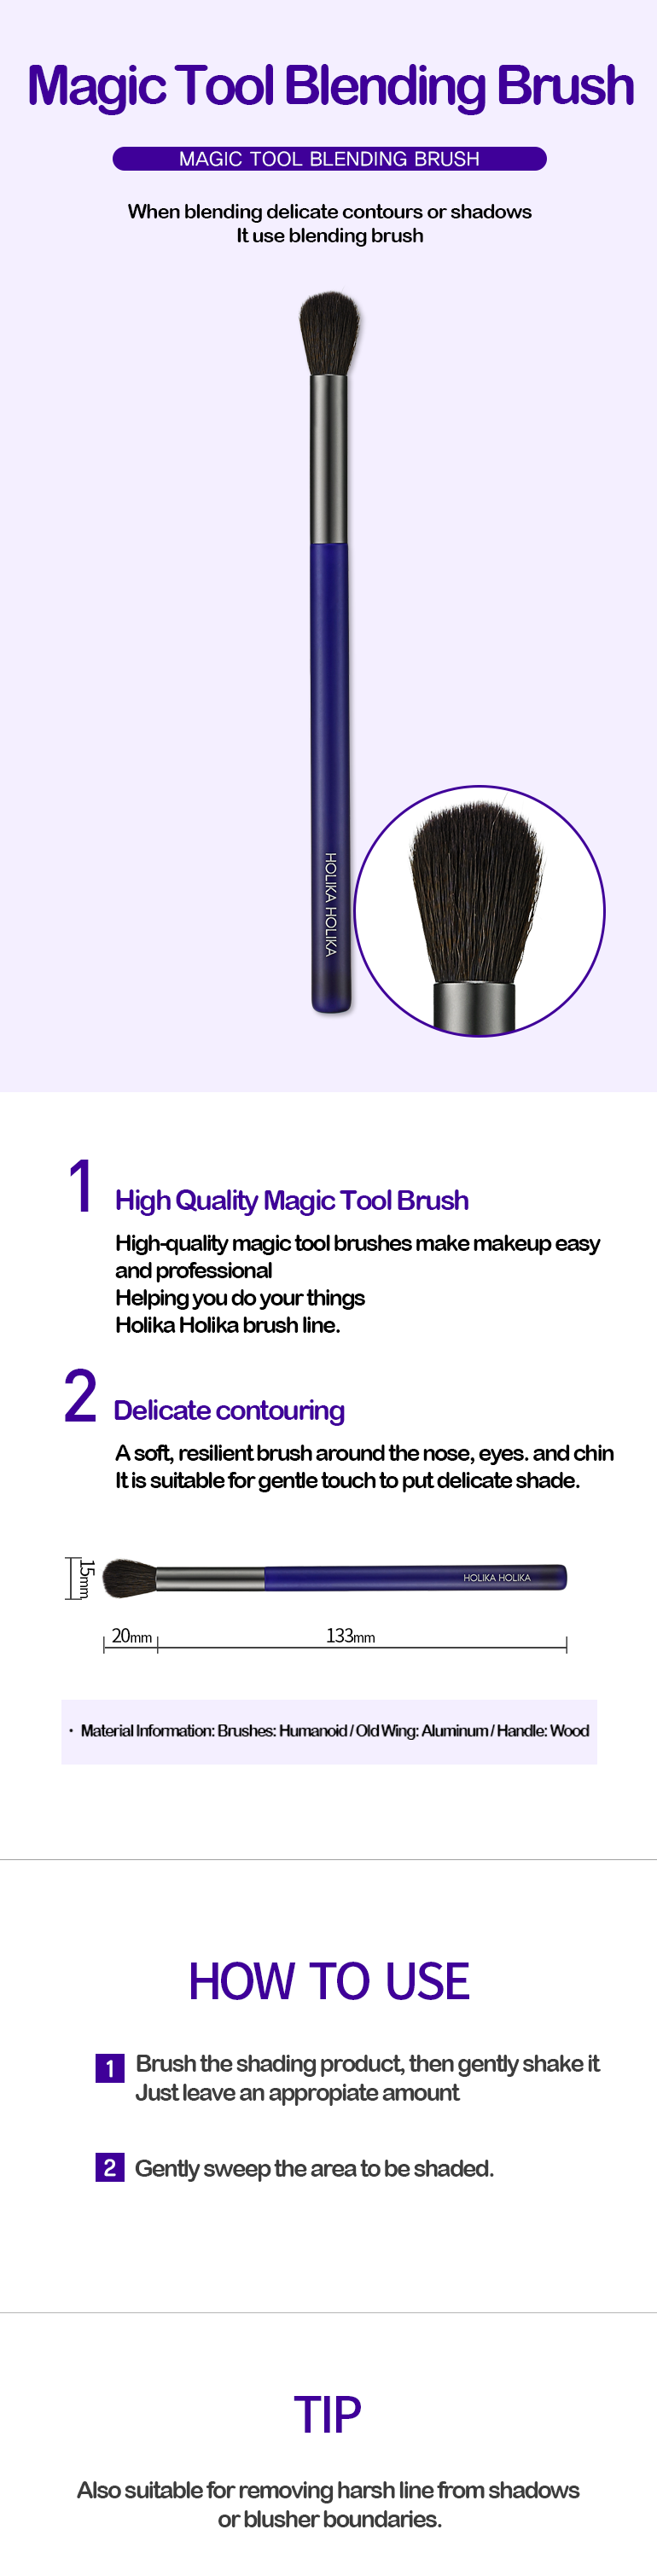 Blending Brush | Magic Tool Blending Brush